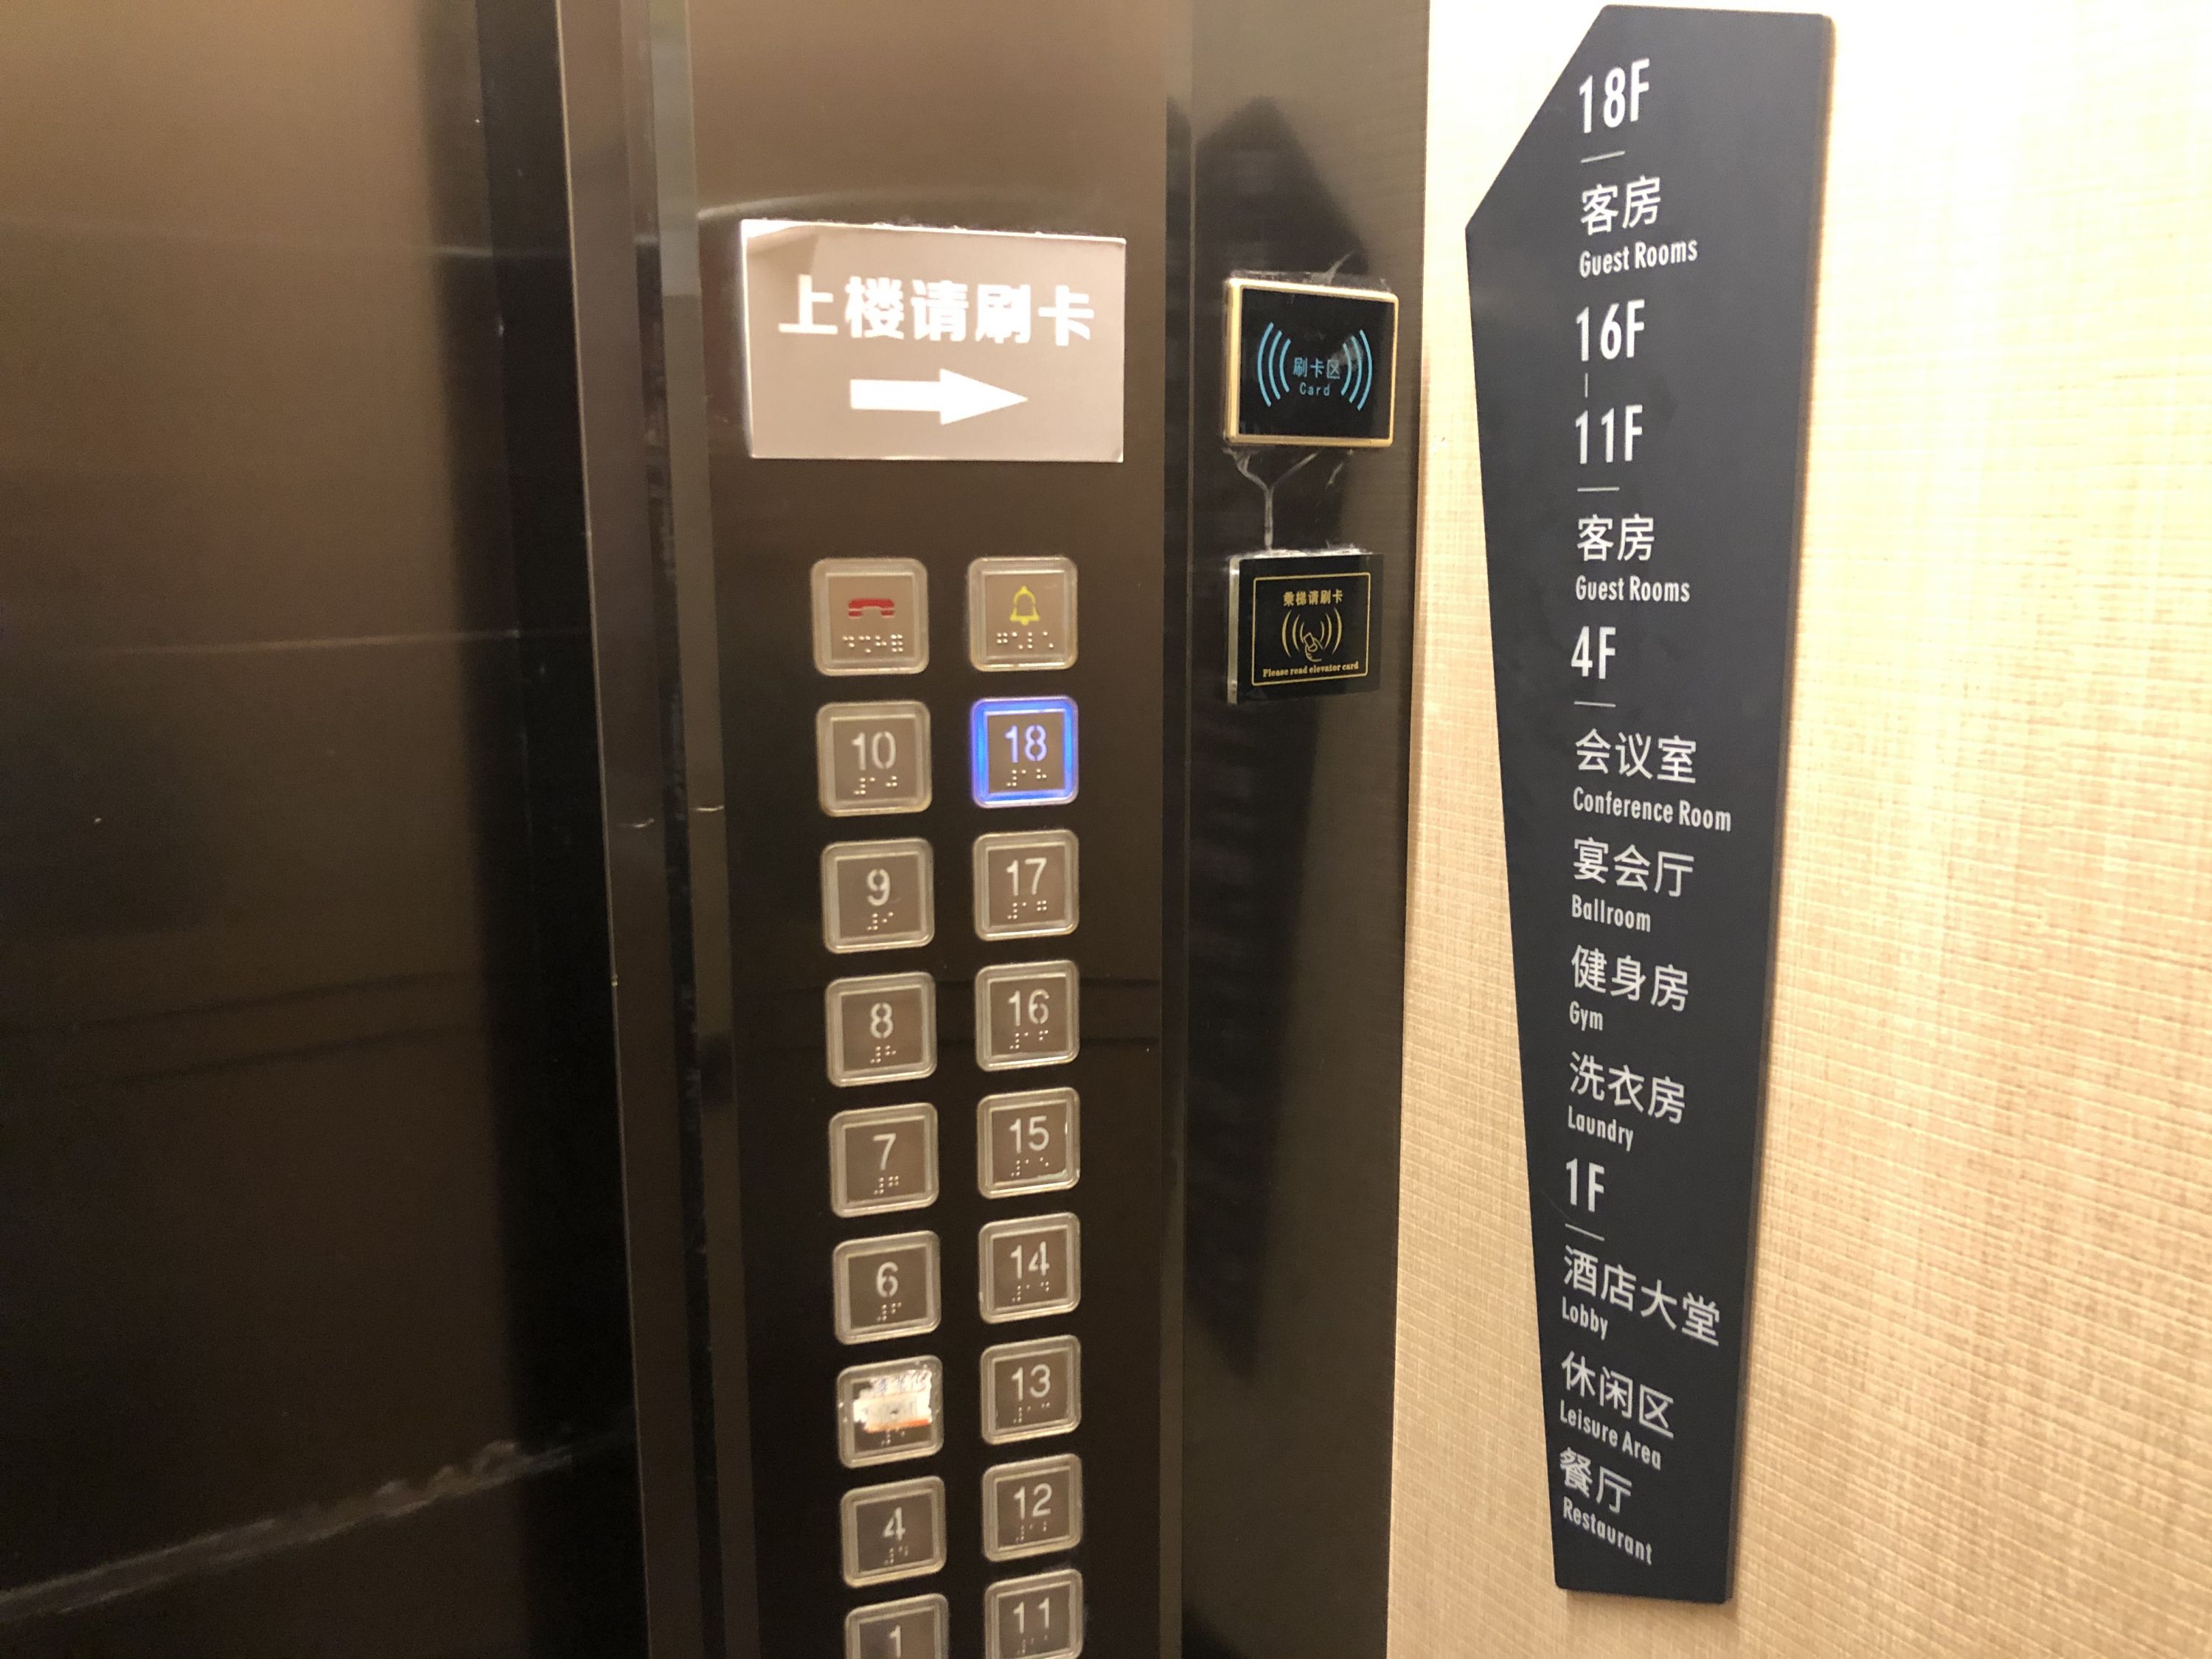 酒店有两部电梯,轿厢内有楼层指引,客房楼层需要刷房卡